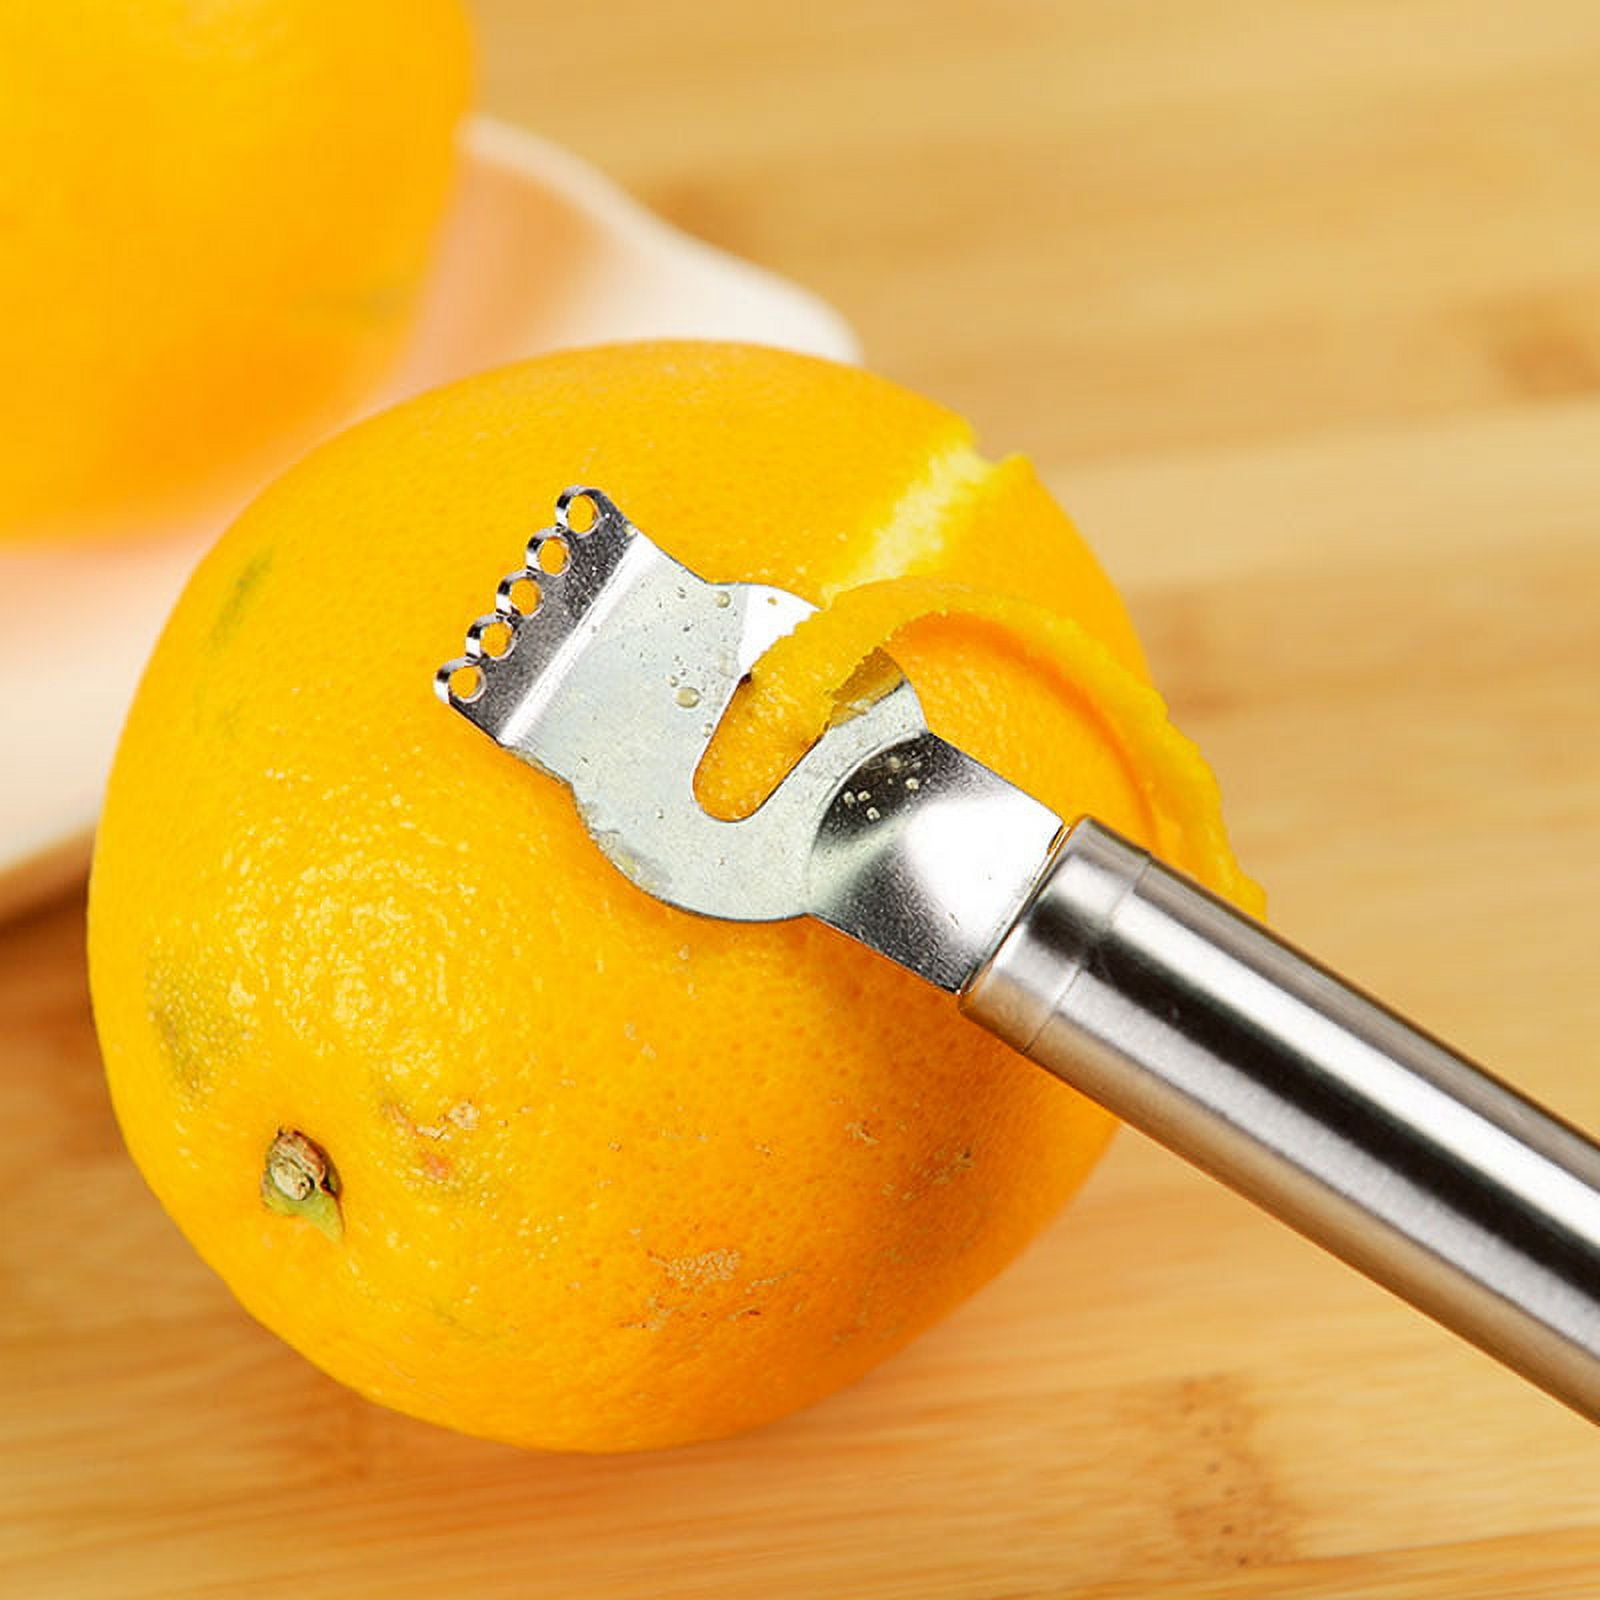 Stainless Steel Lemon Peeler Zester Grater Lime Orange Citrus Fruit Grater  Grips Lime Zest Knife Peeling Tools From Paulelectronic, $1.11